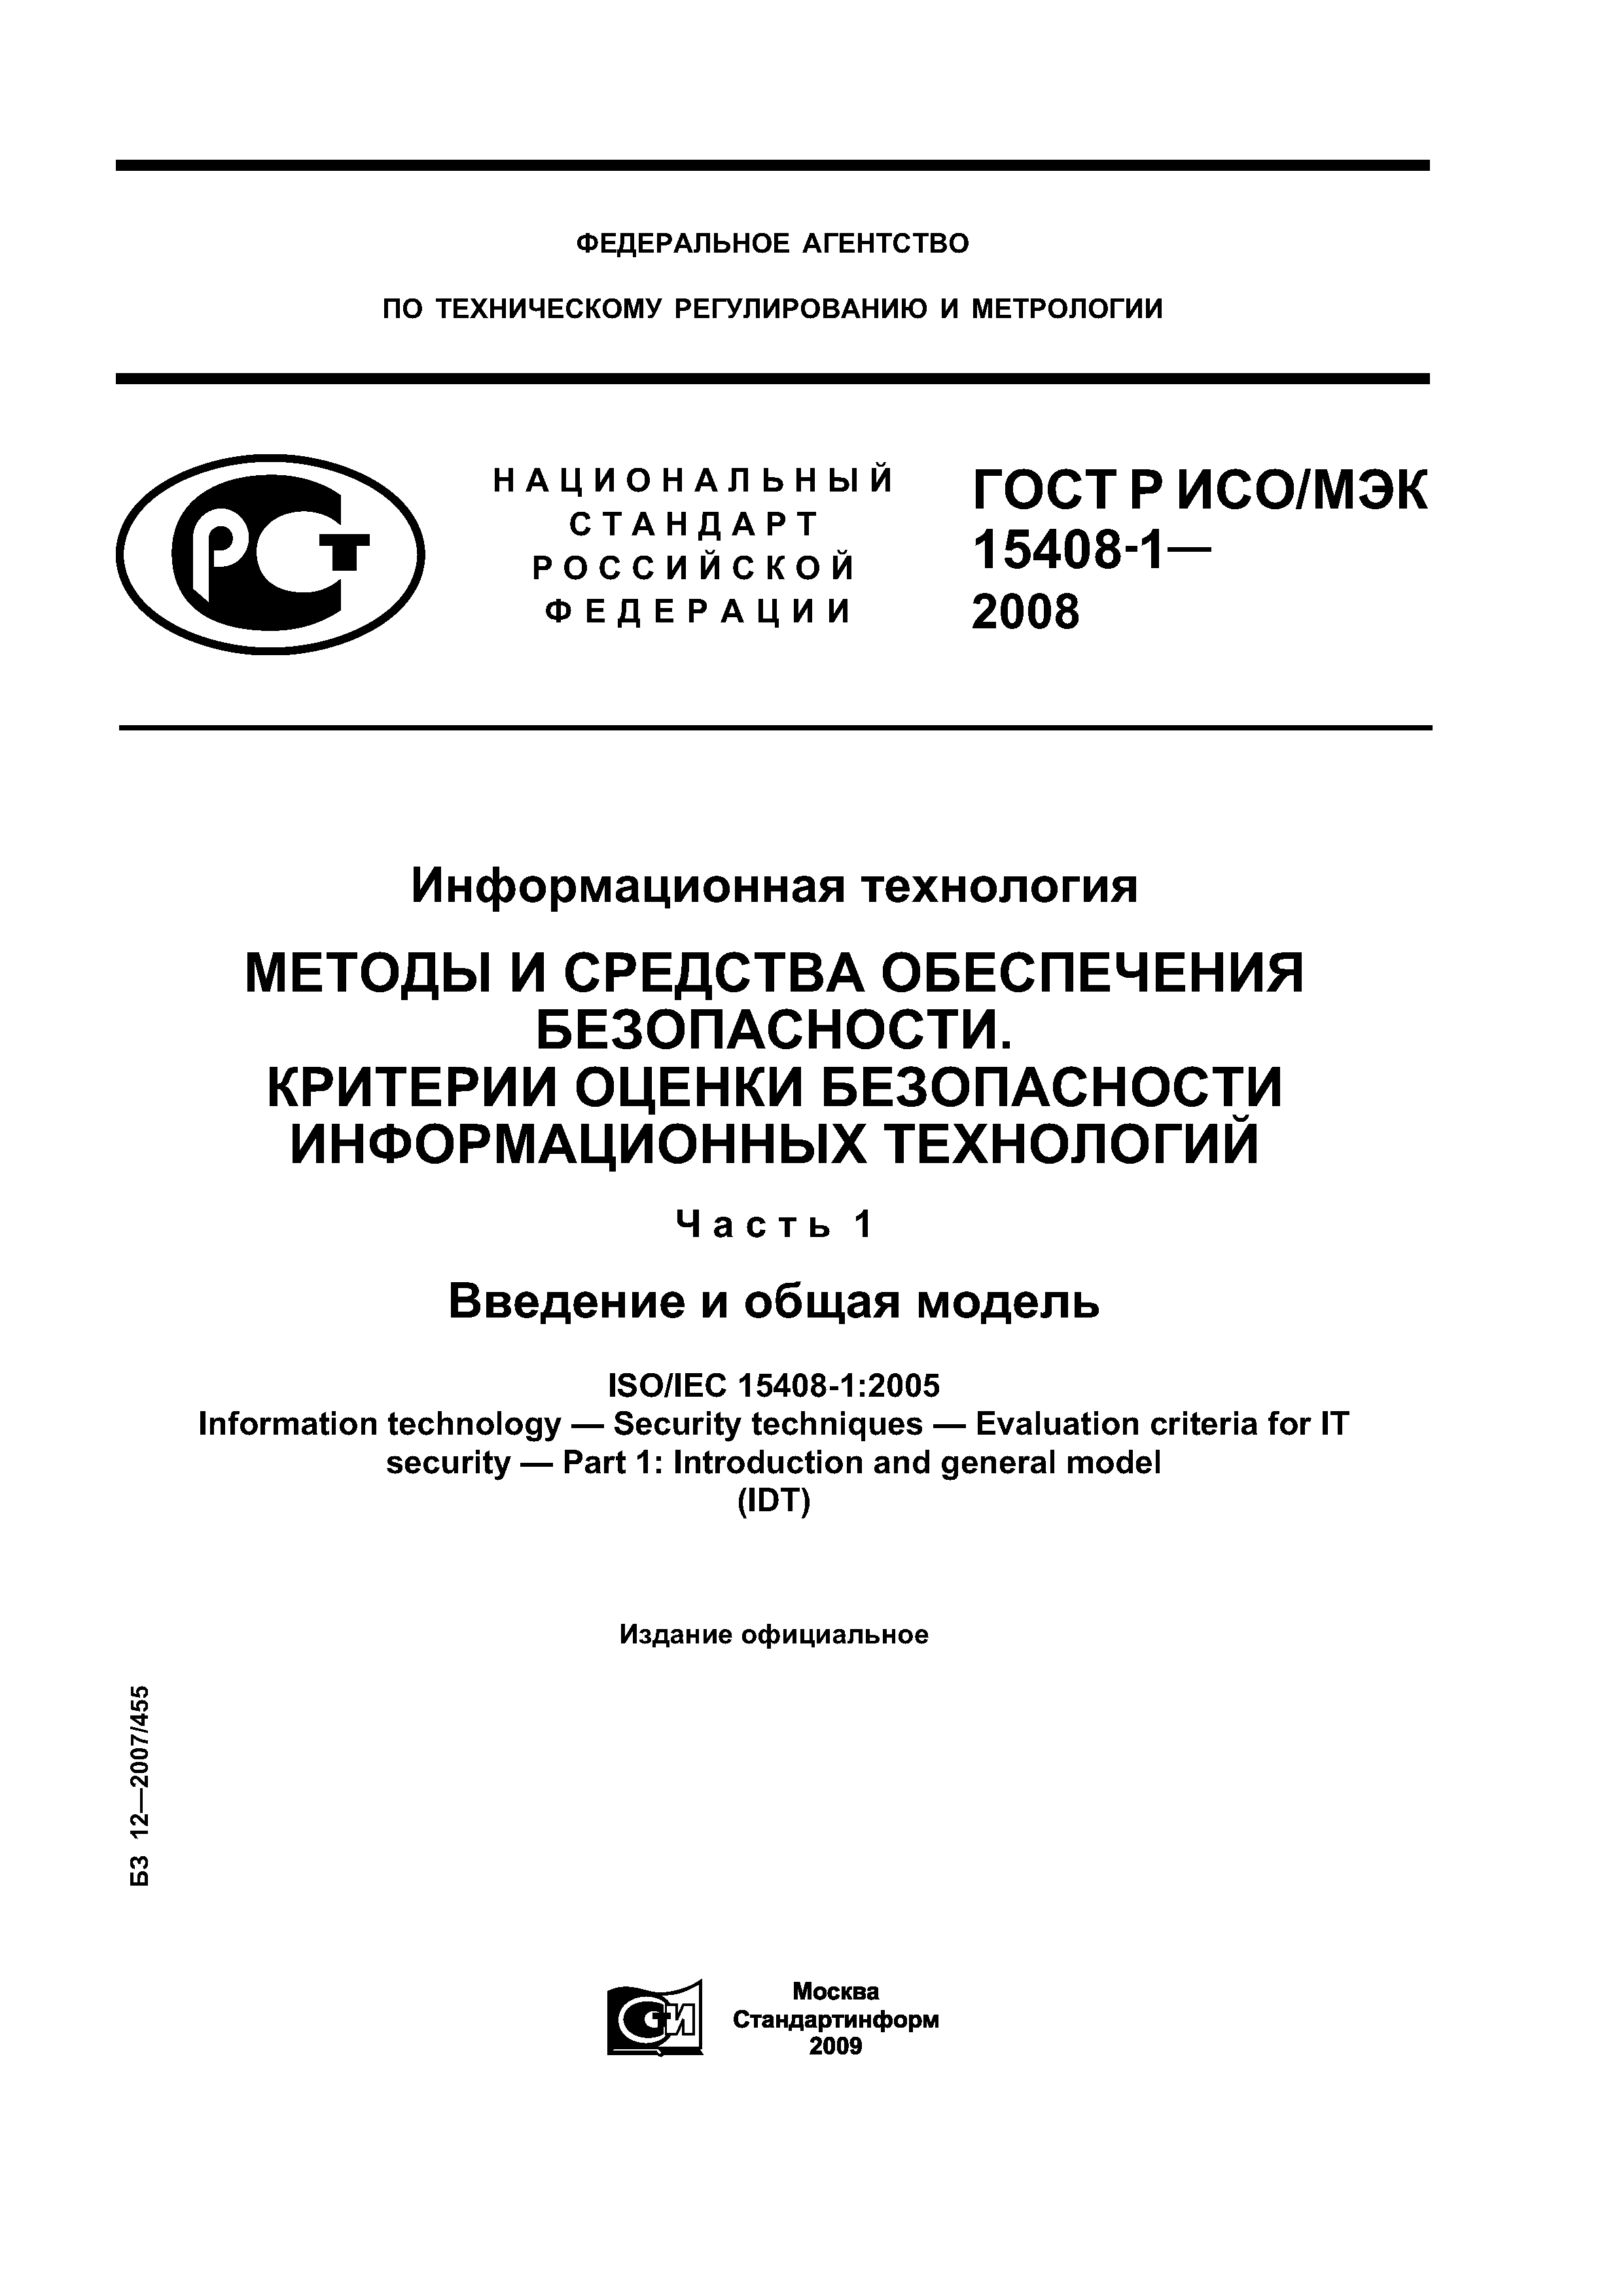 ГОСТ Р ИСО/МЭК 15408-1-2008